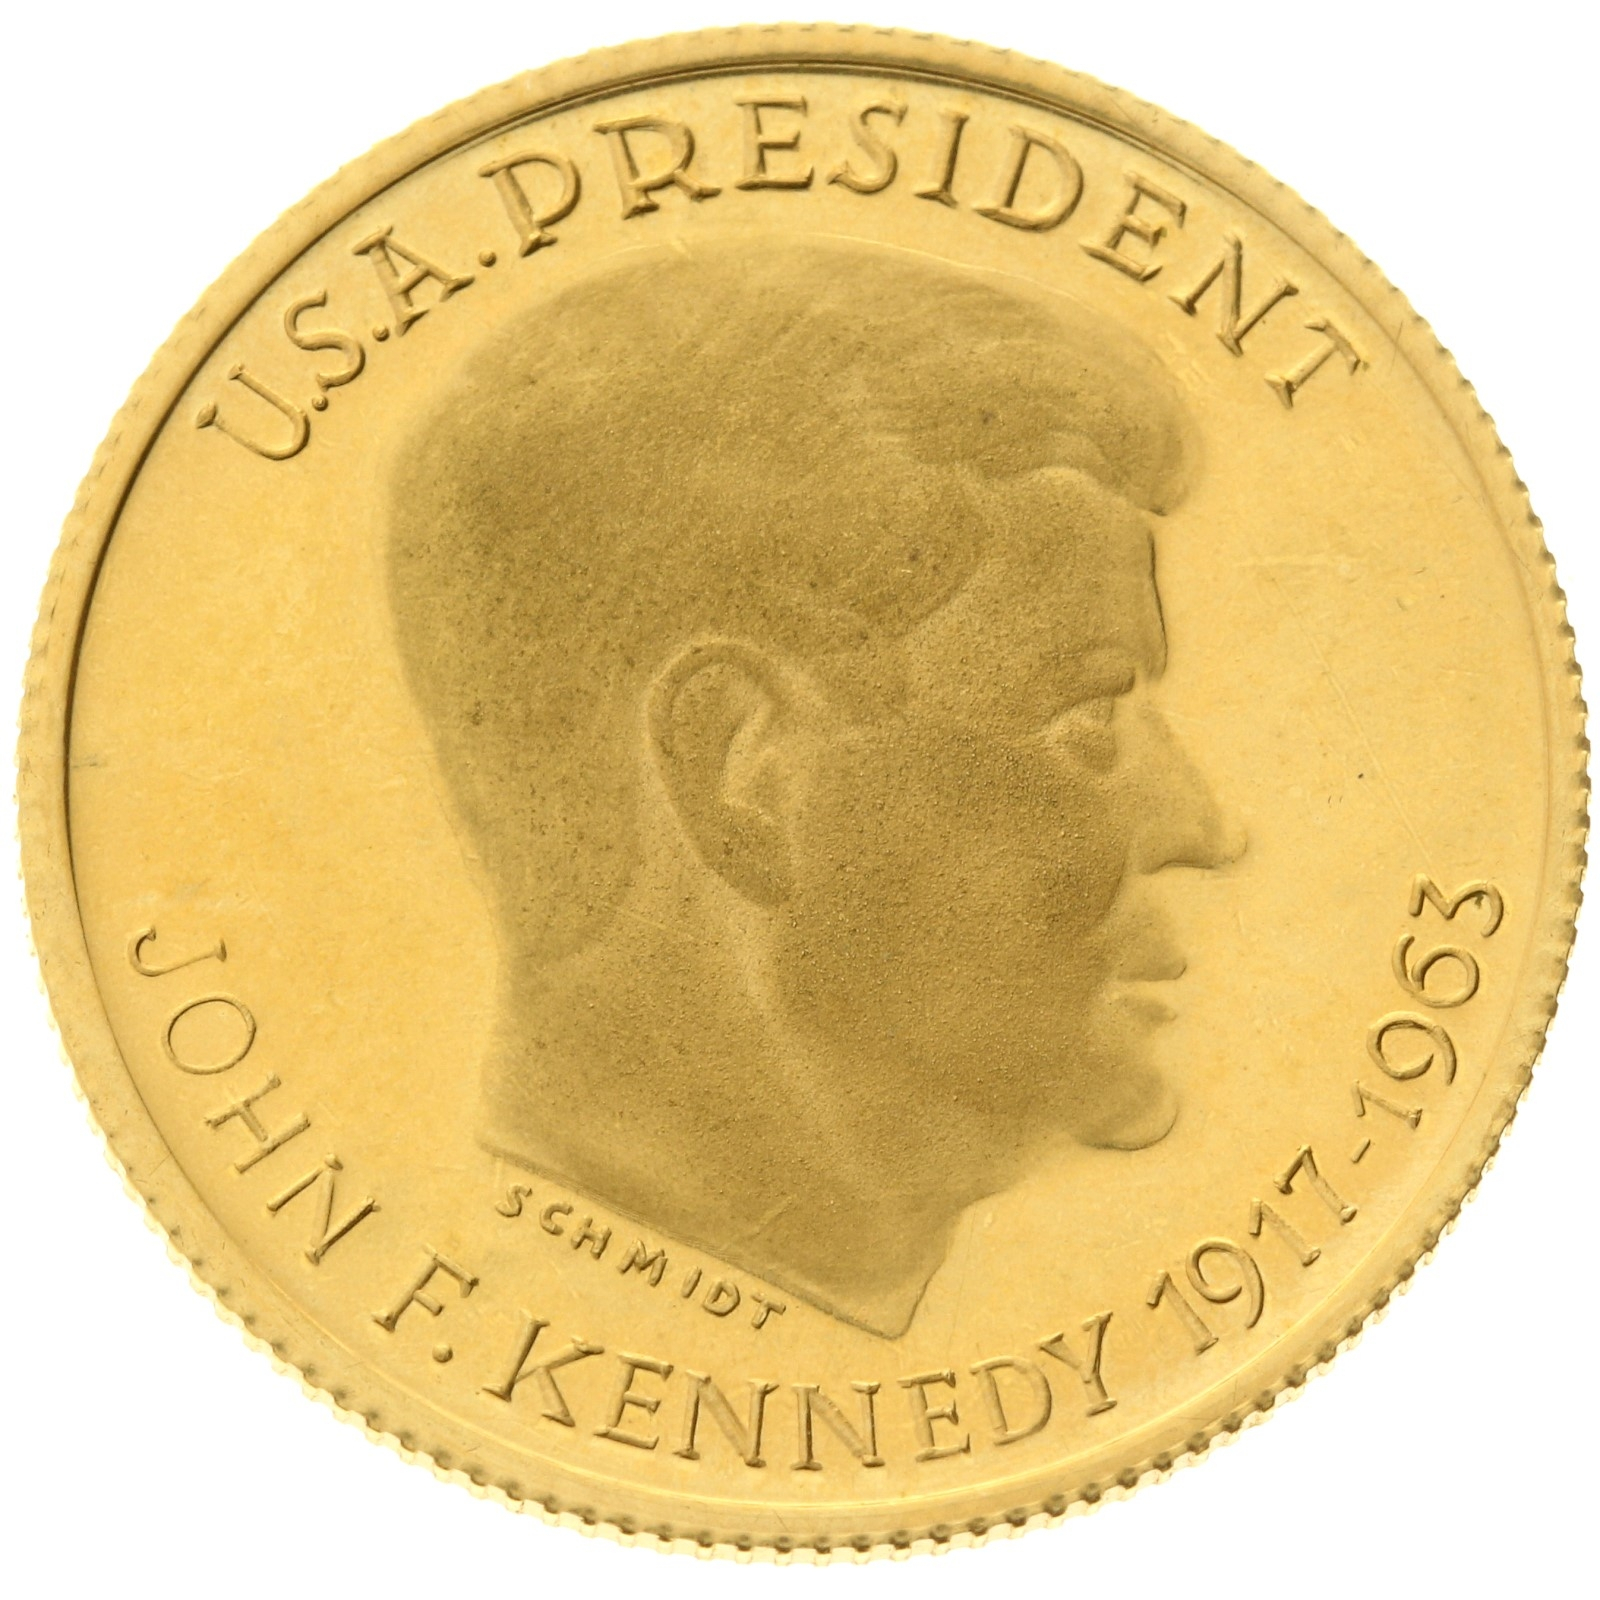 Denmark - Medal (1 ducat) - 1963 - Kennedy memorial Arlington